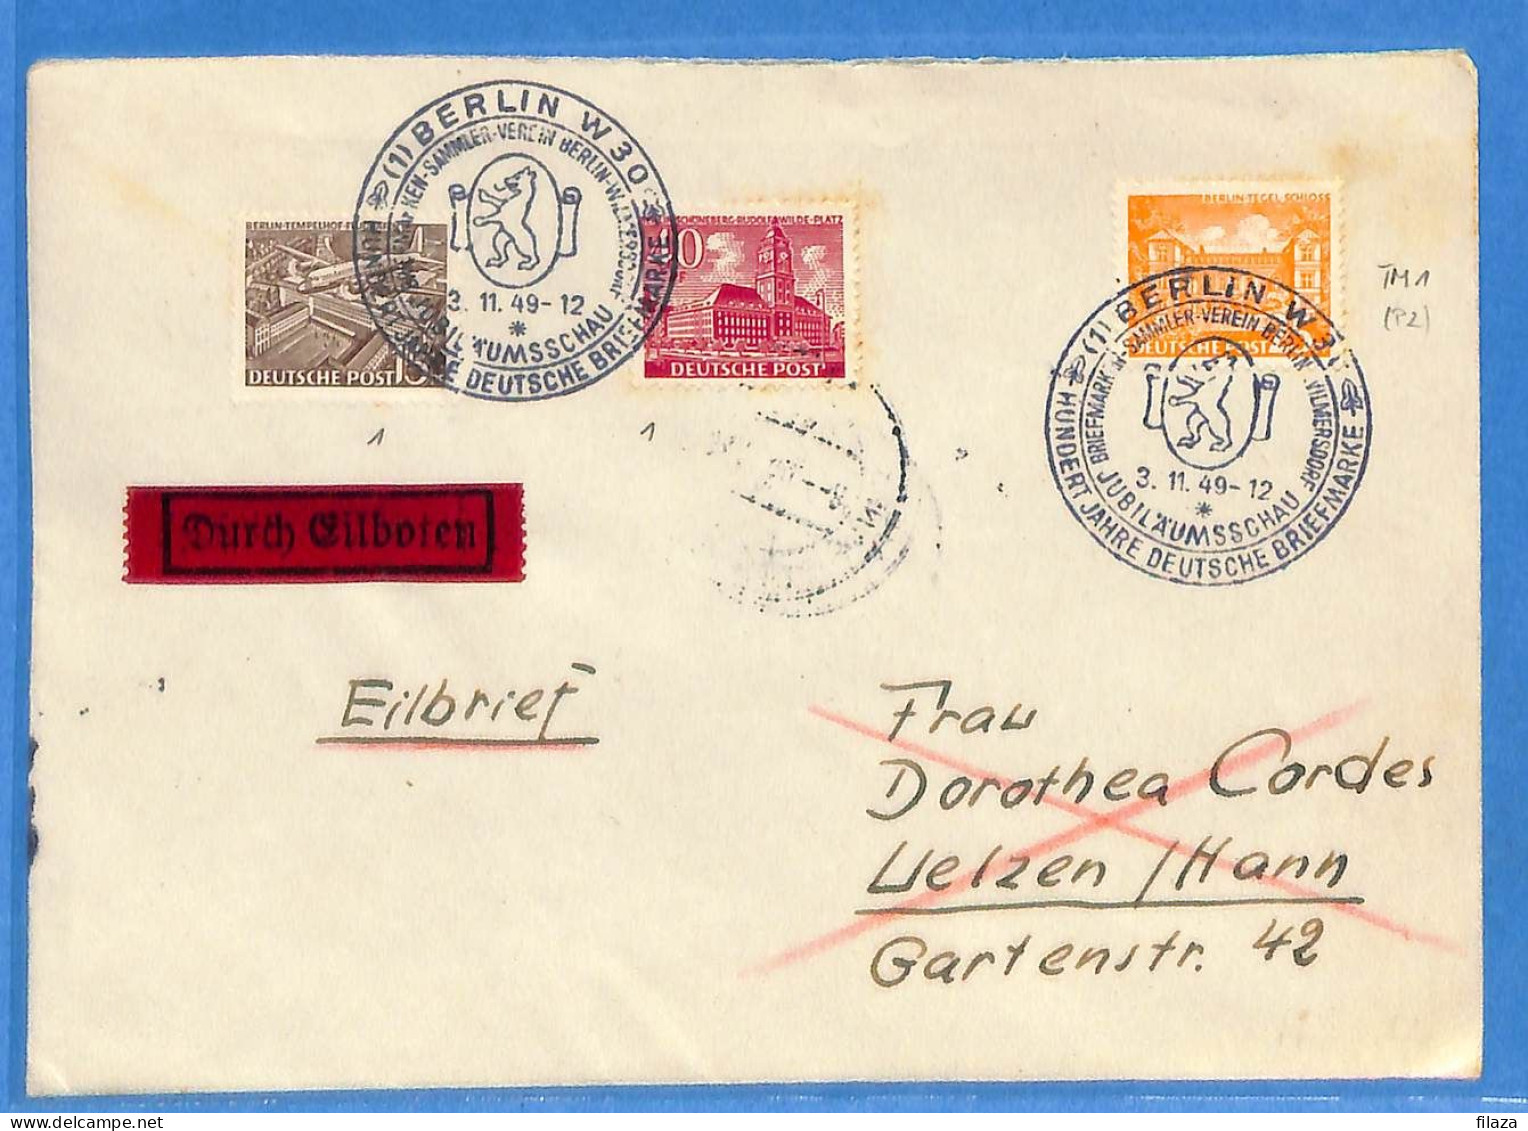 Berlin West 1949 - Lettre Durch Eilboten De Berlin - G32995 - Lettres & Documents